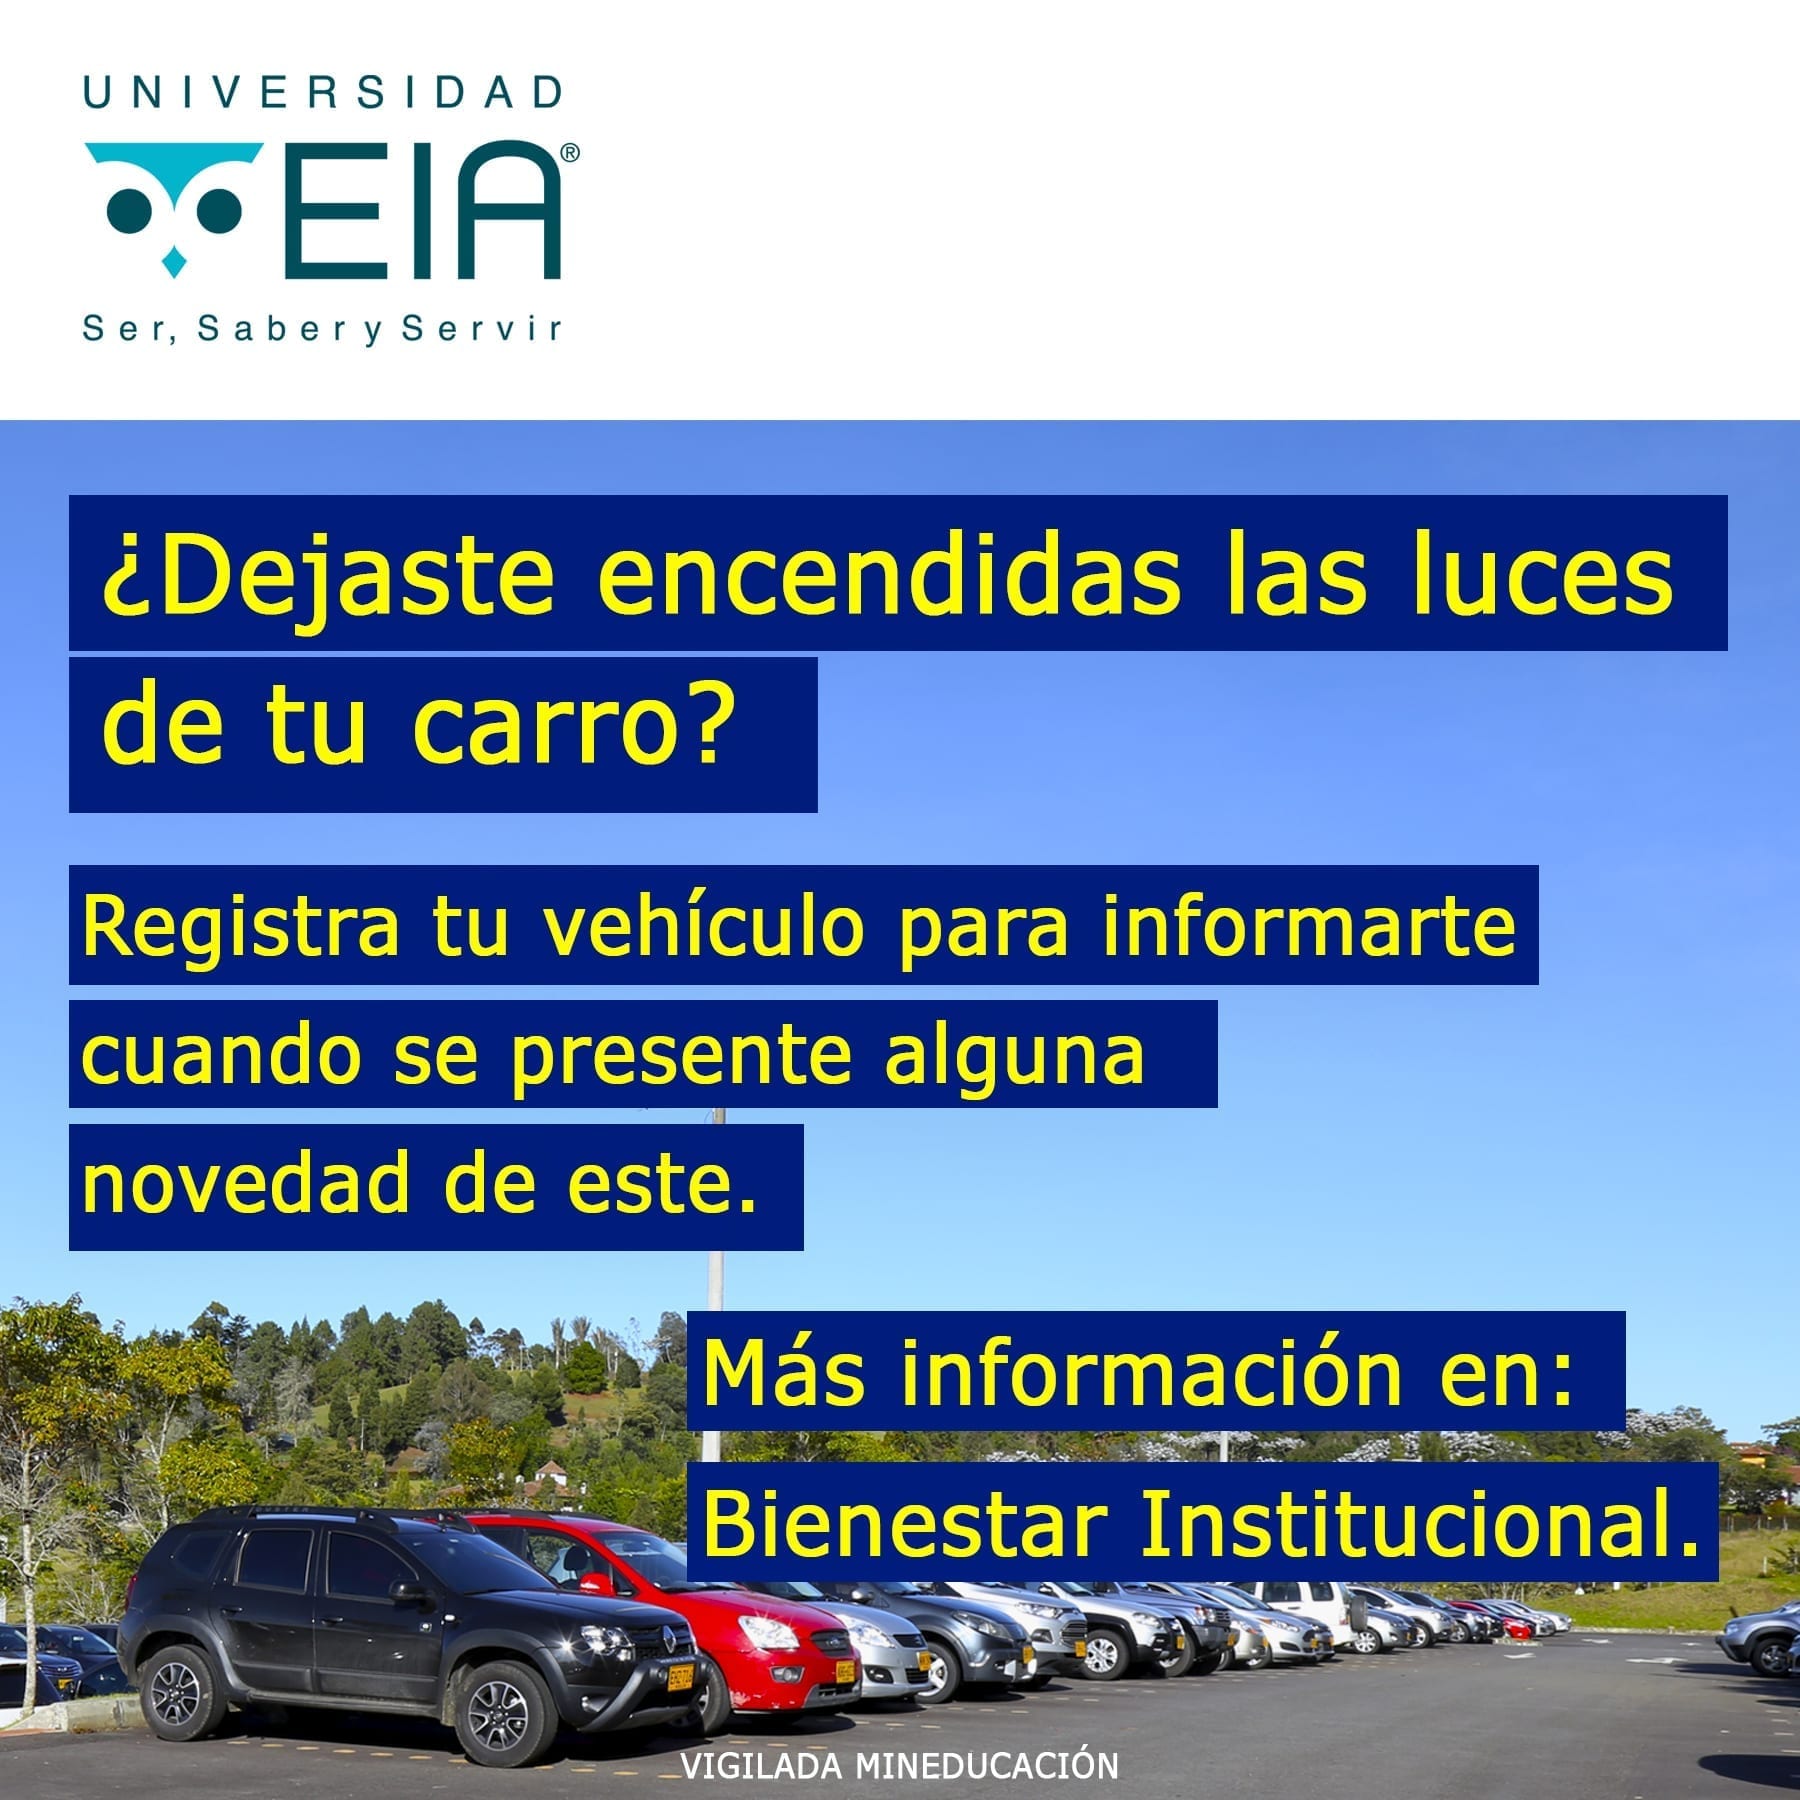 Registro de vehículos de ingreso habitual a los campus (carros y motos)